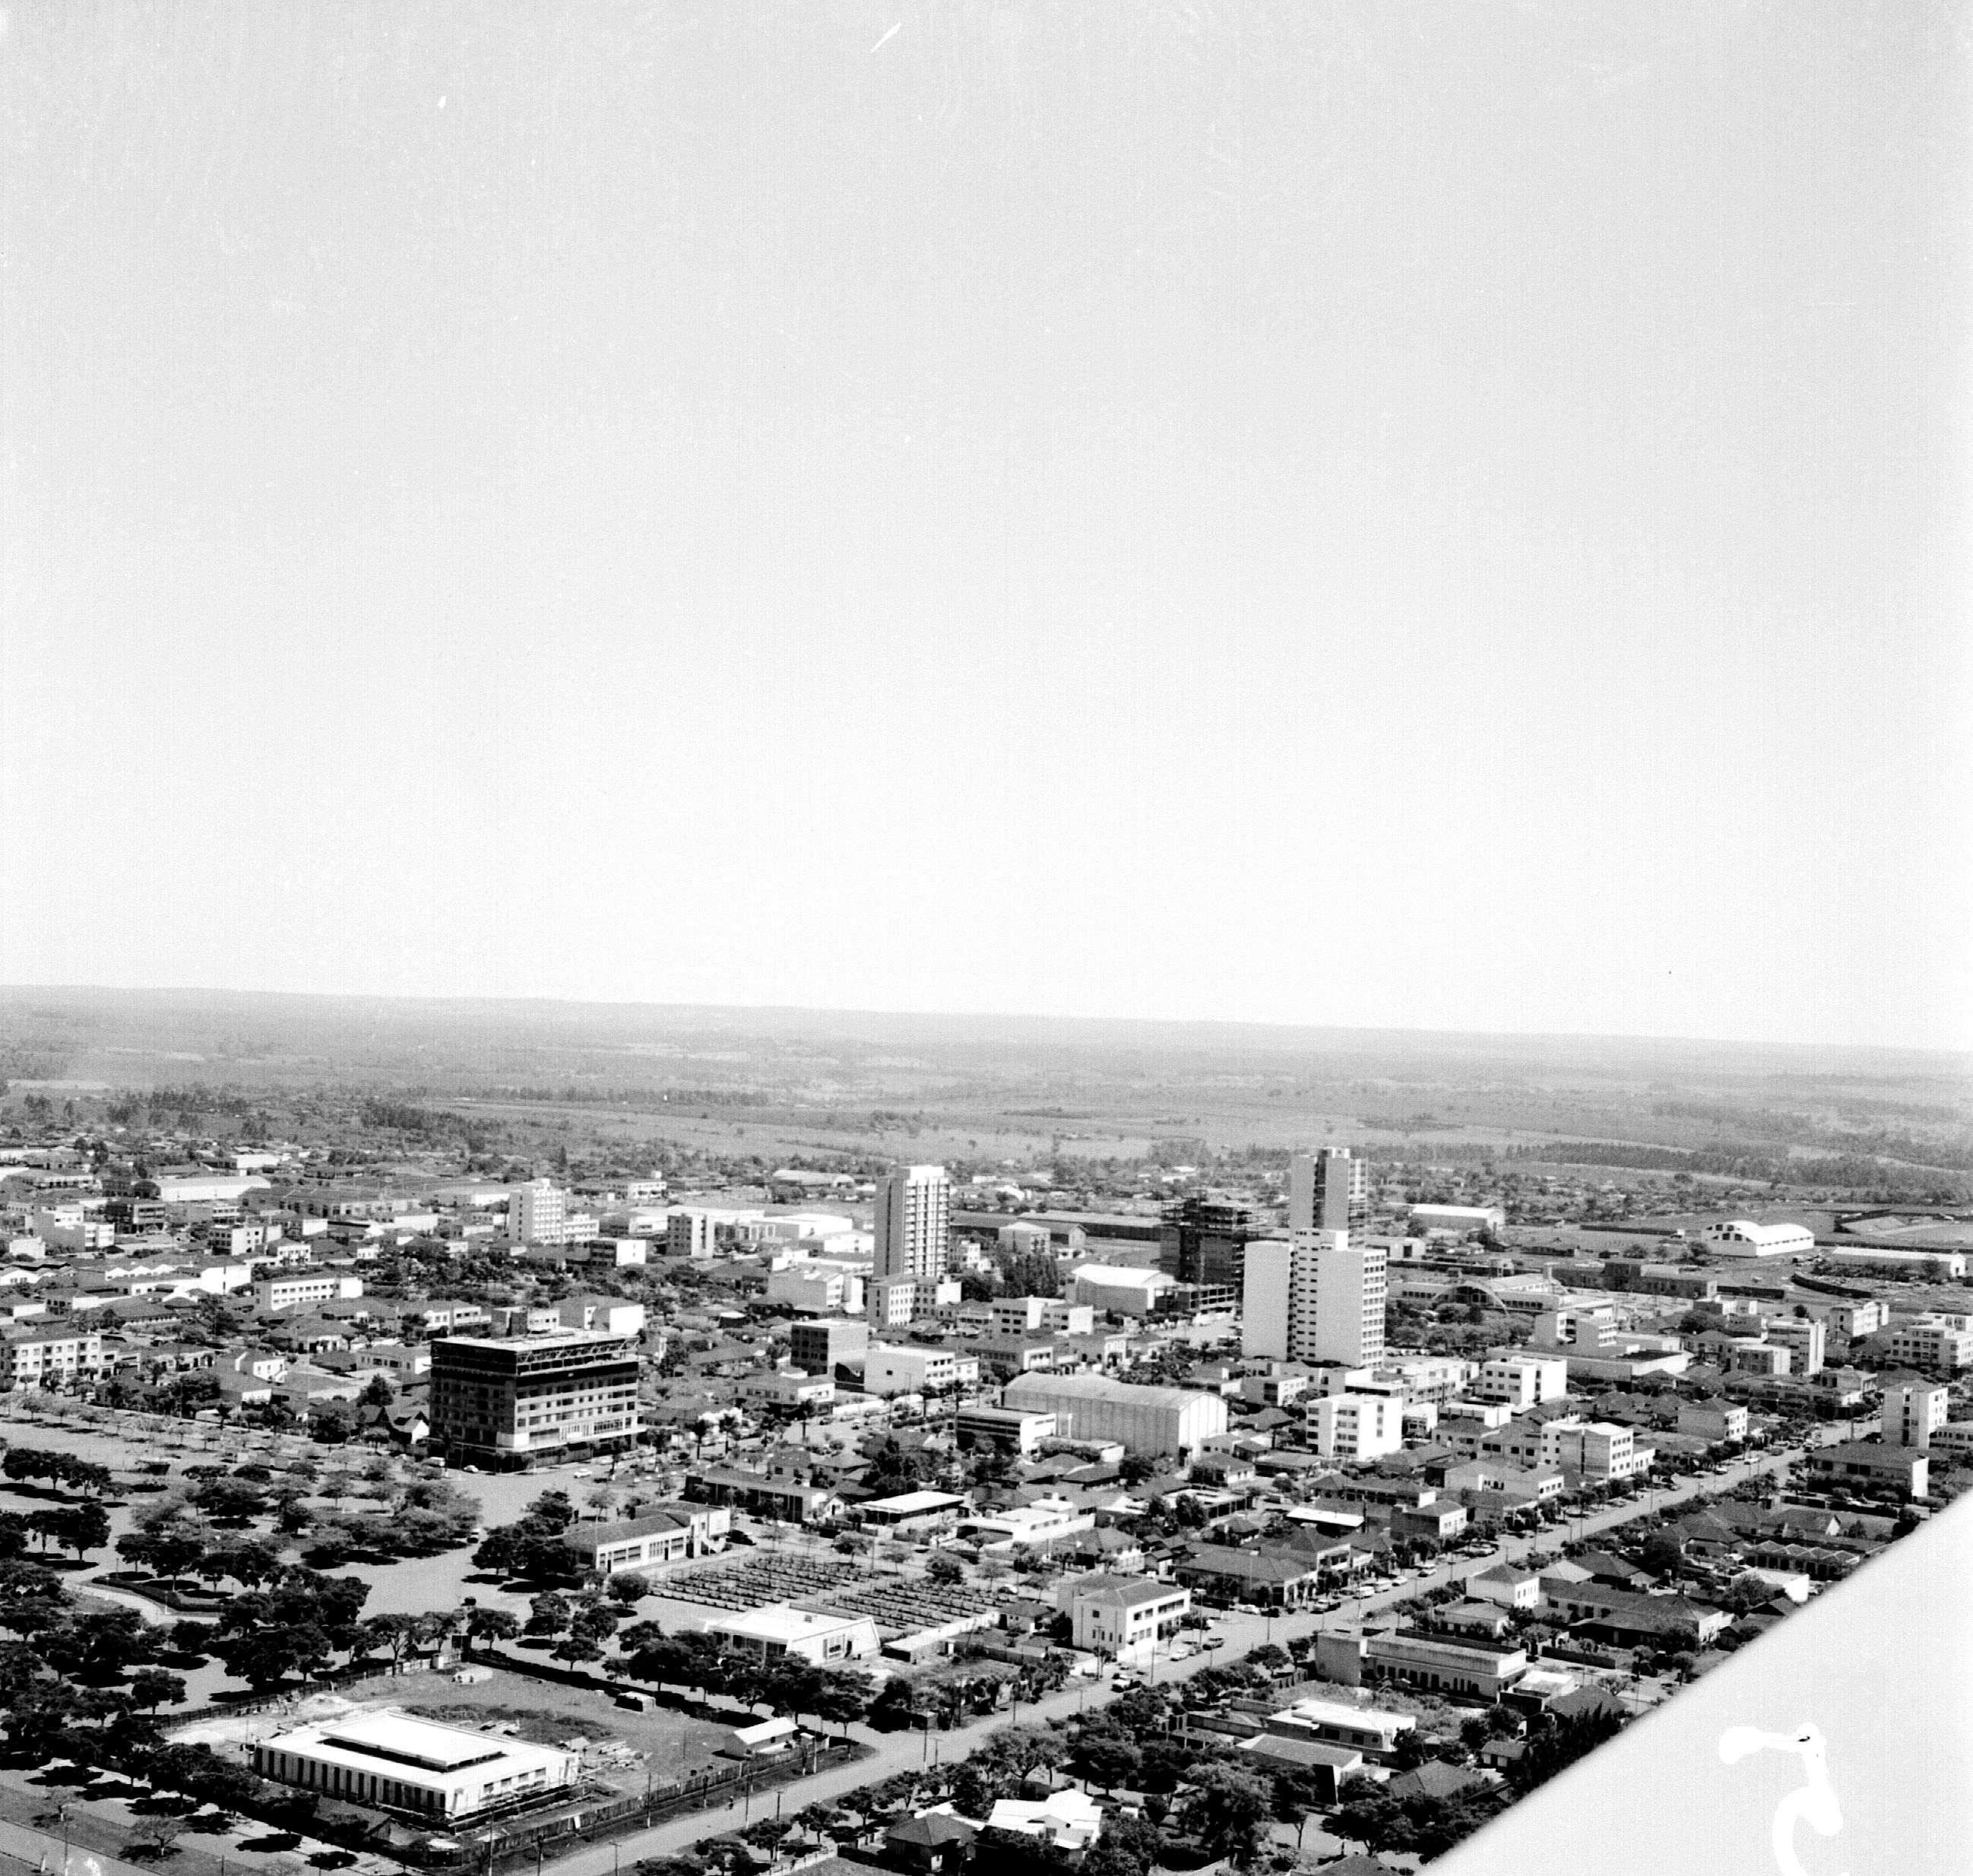 Vista aérea da região central - Década de 1960